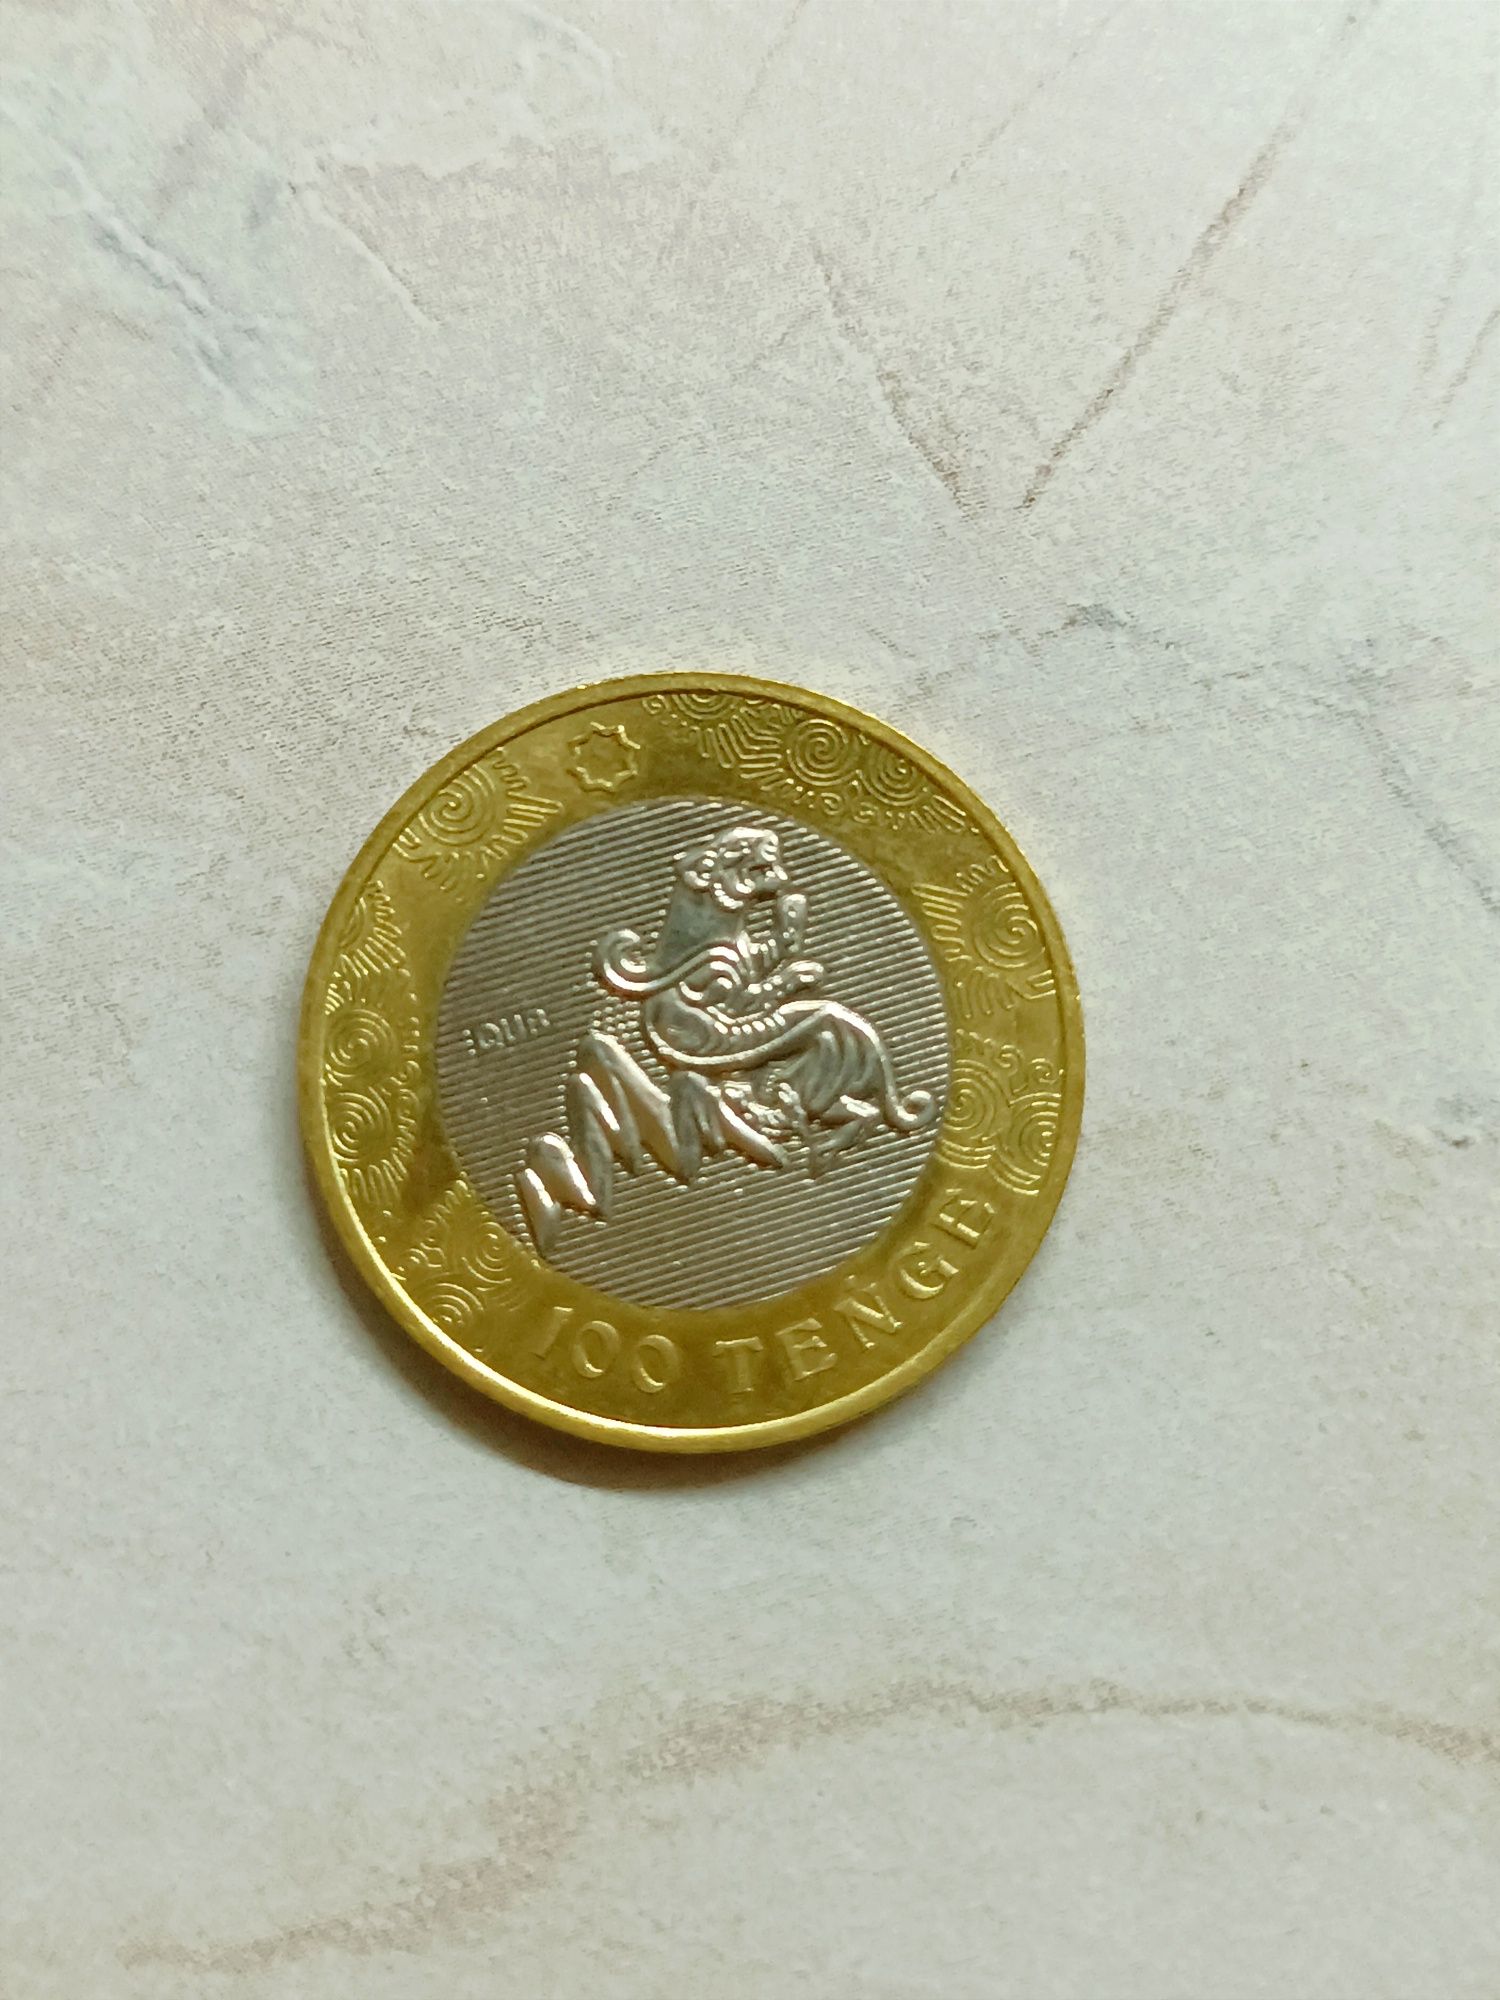 Коллекционная монета 100тг со снежным барсом